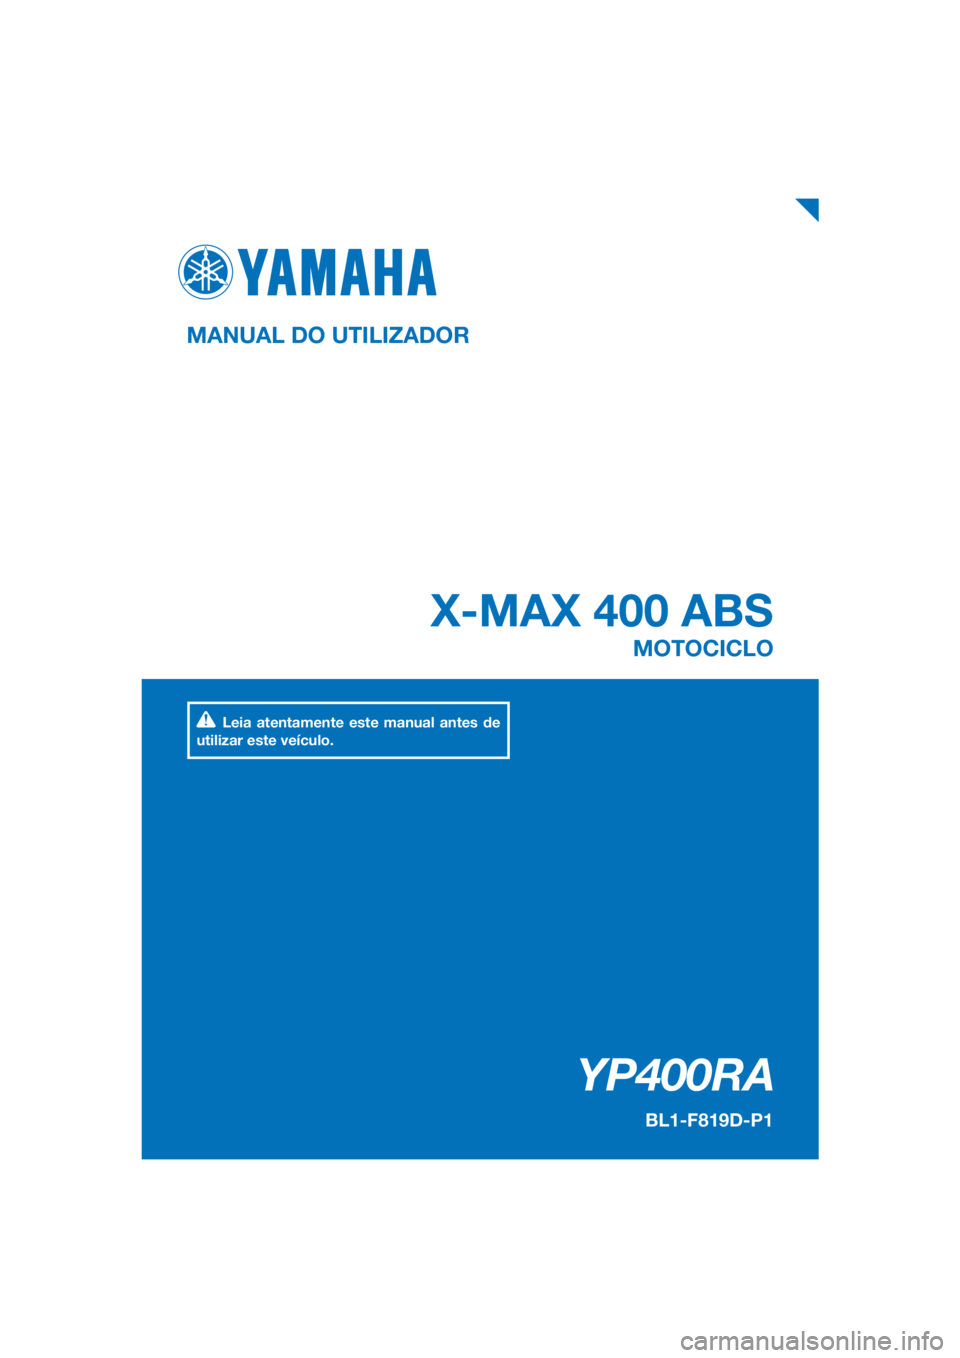 YAMAHA XMAX 400 2018  Manual de utilização (in Portuguese) PANTONE285C
YP400RA
X-MAX 400 ABS
MANUAL DO UTILIZADOR
BL1-F819D-P1
MOTOCICLO
Leia atentamente este manual antes de 
utilizar este veículo.
[Portuguese  (P)] 